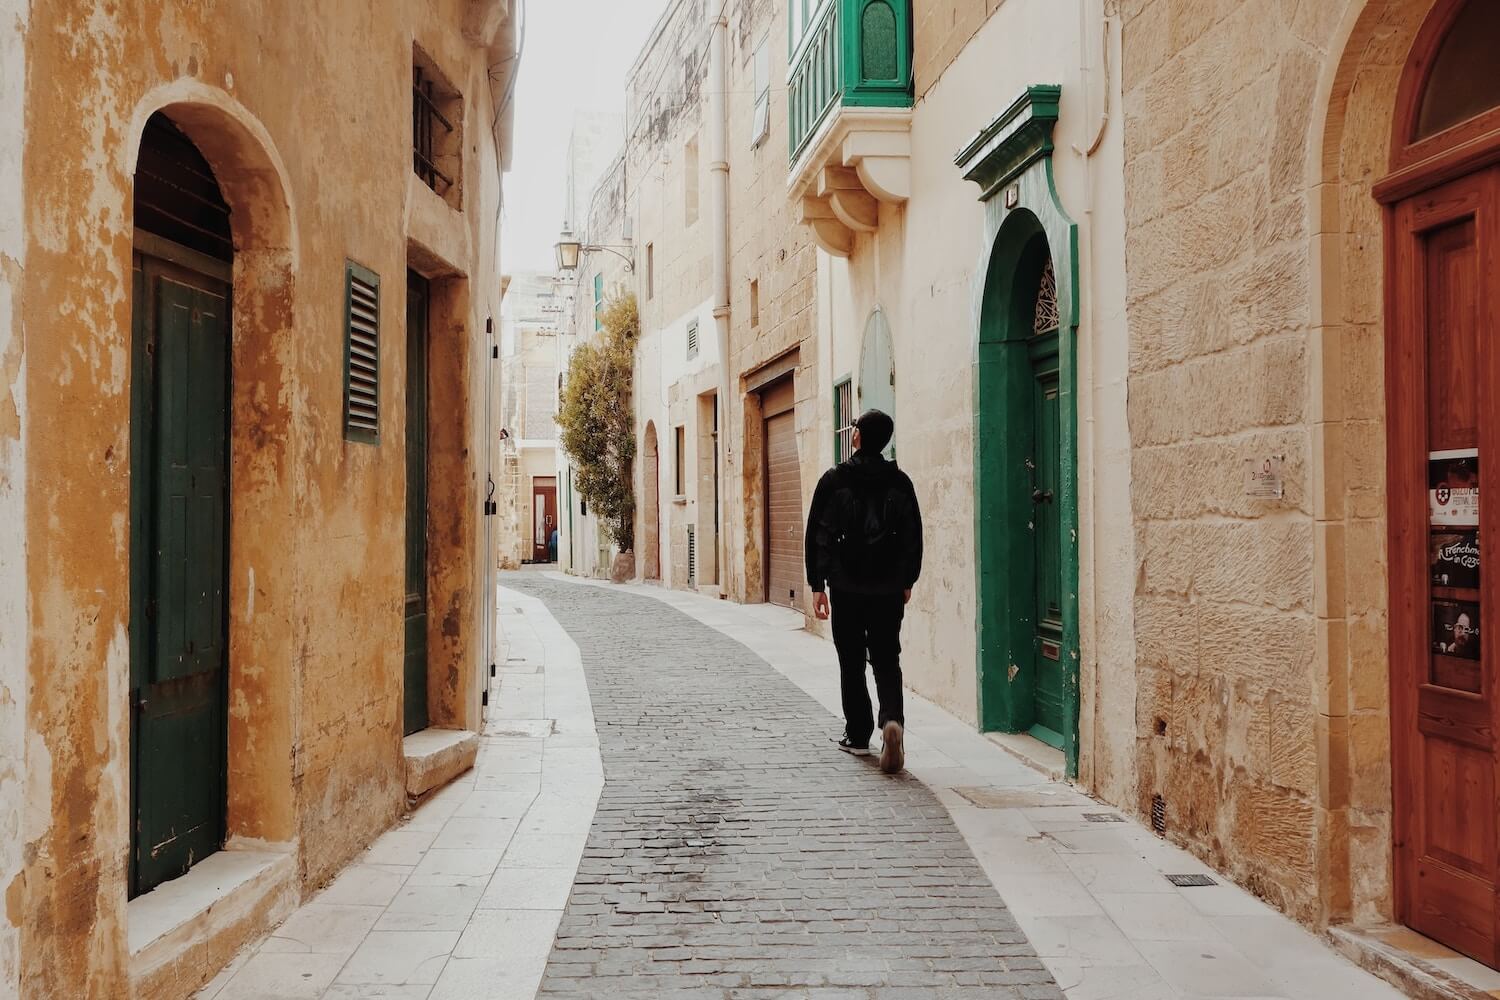 A tourist wanders a narrow street in Valetta, Malta